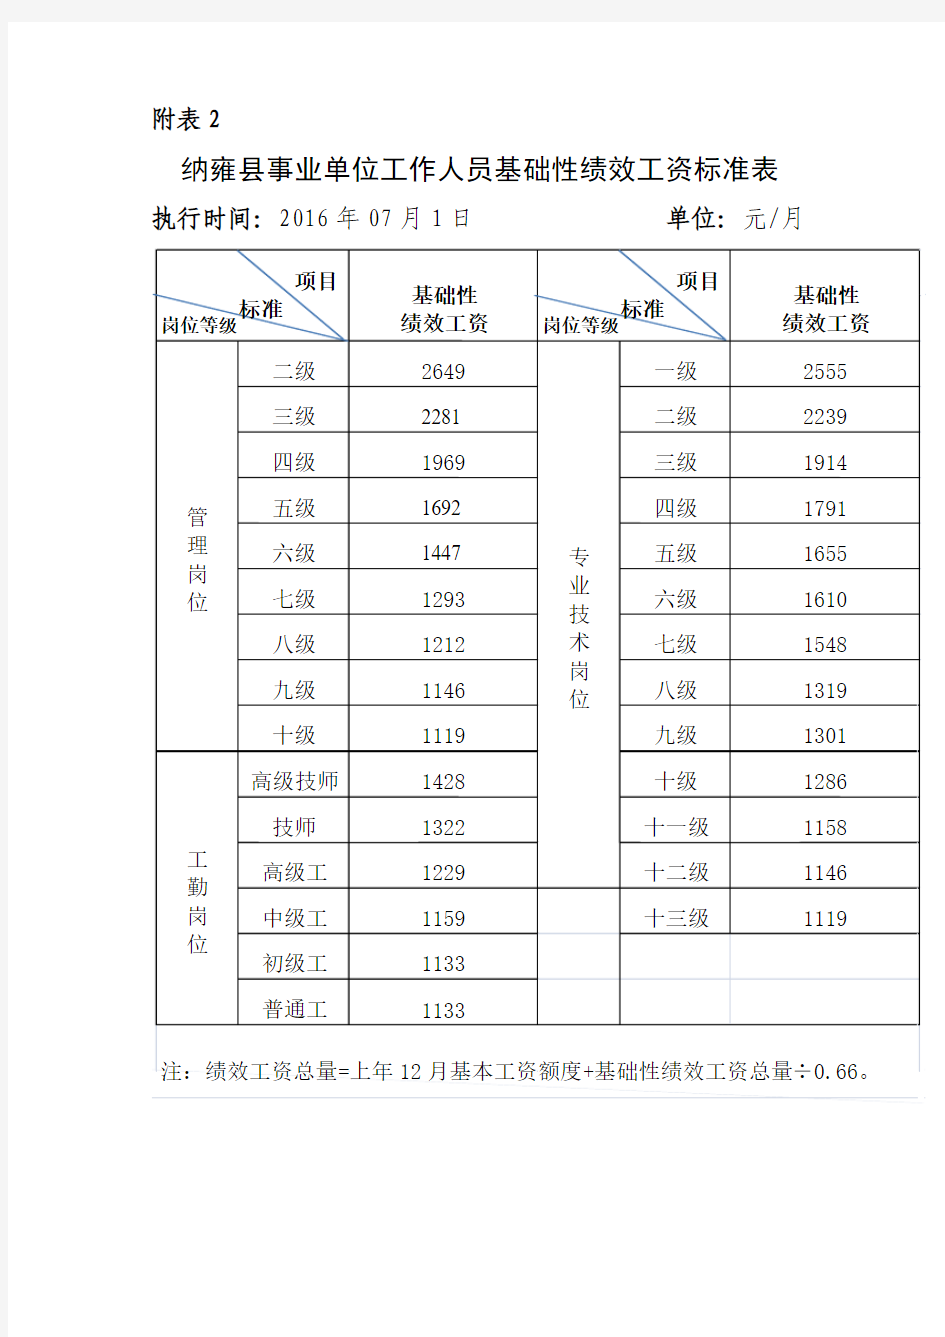 纳雍县事业单位工作人员基础性绩效工资标准表